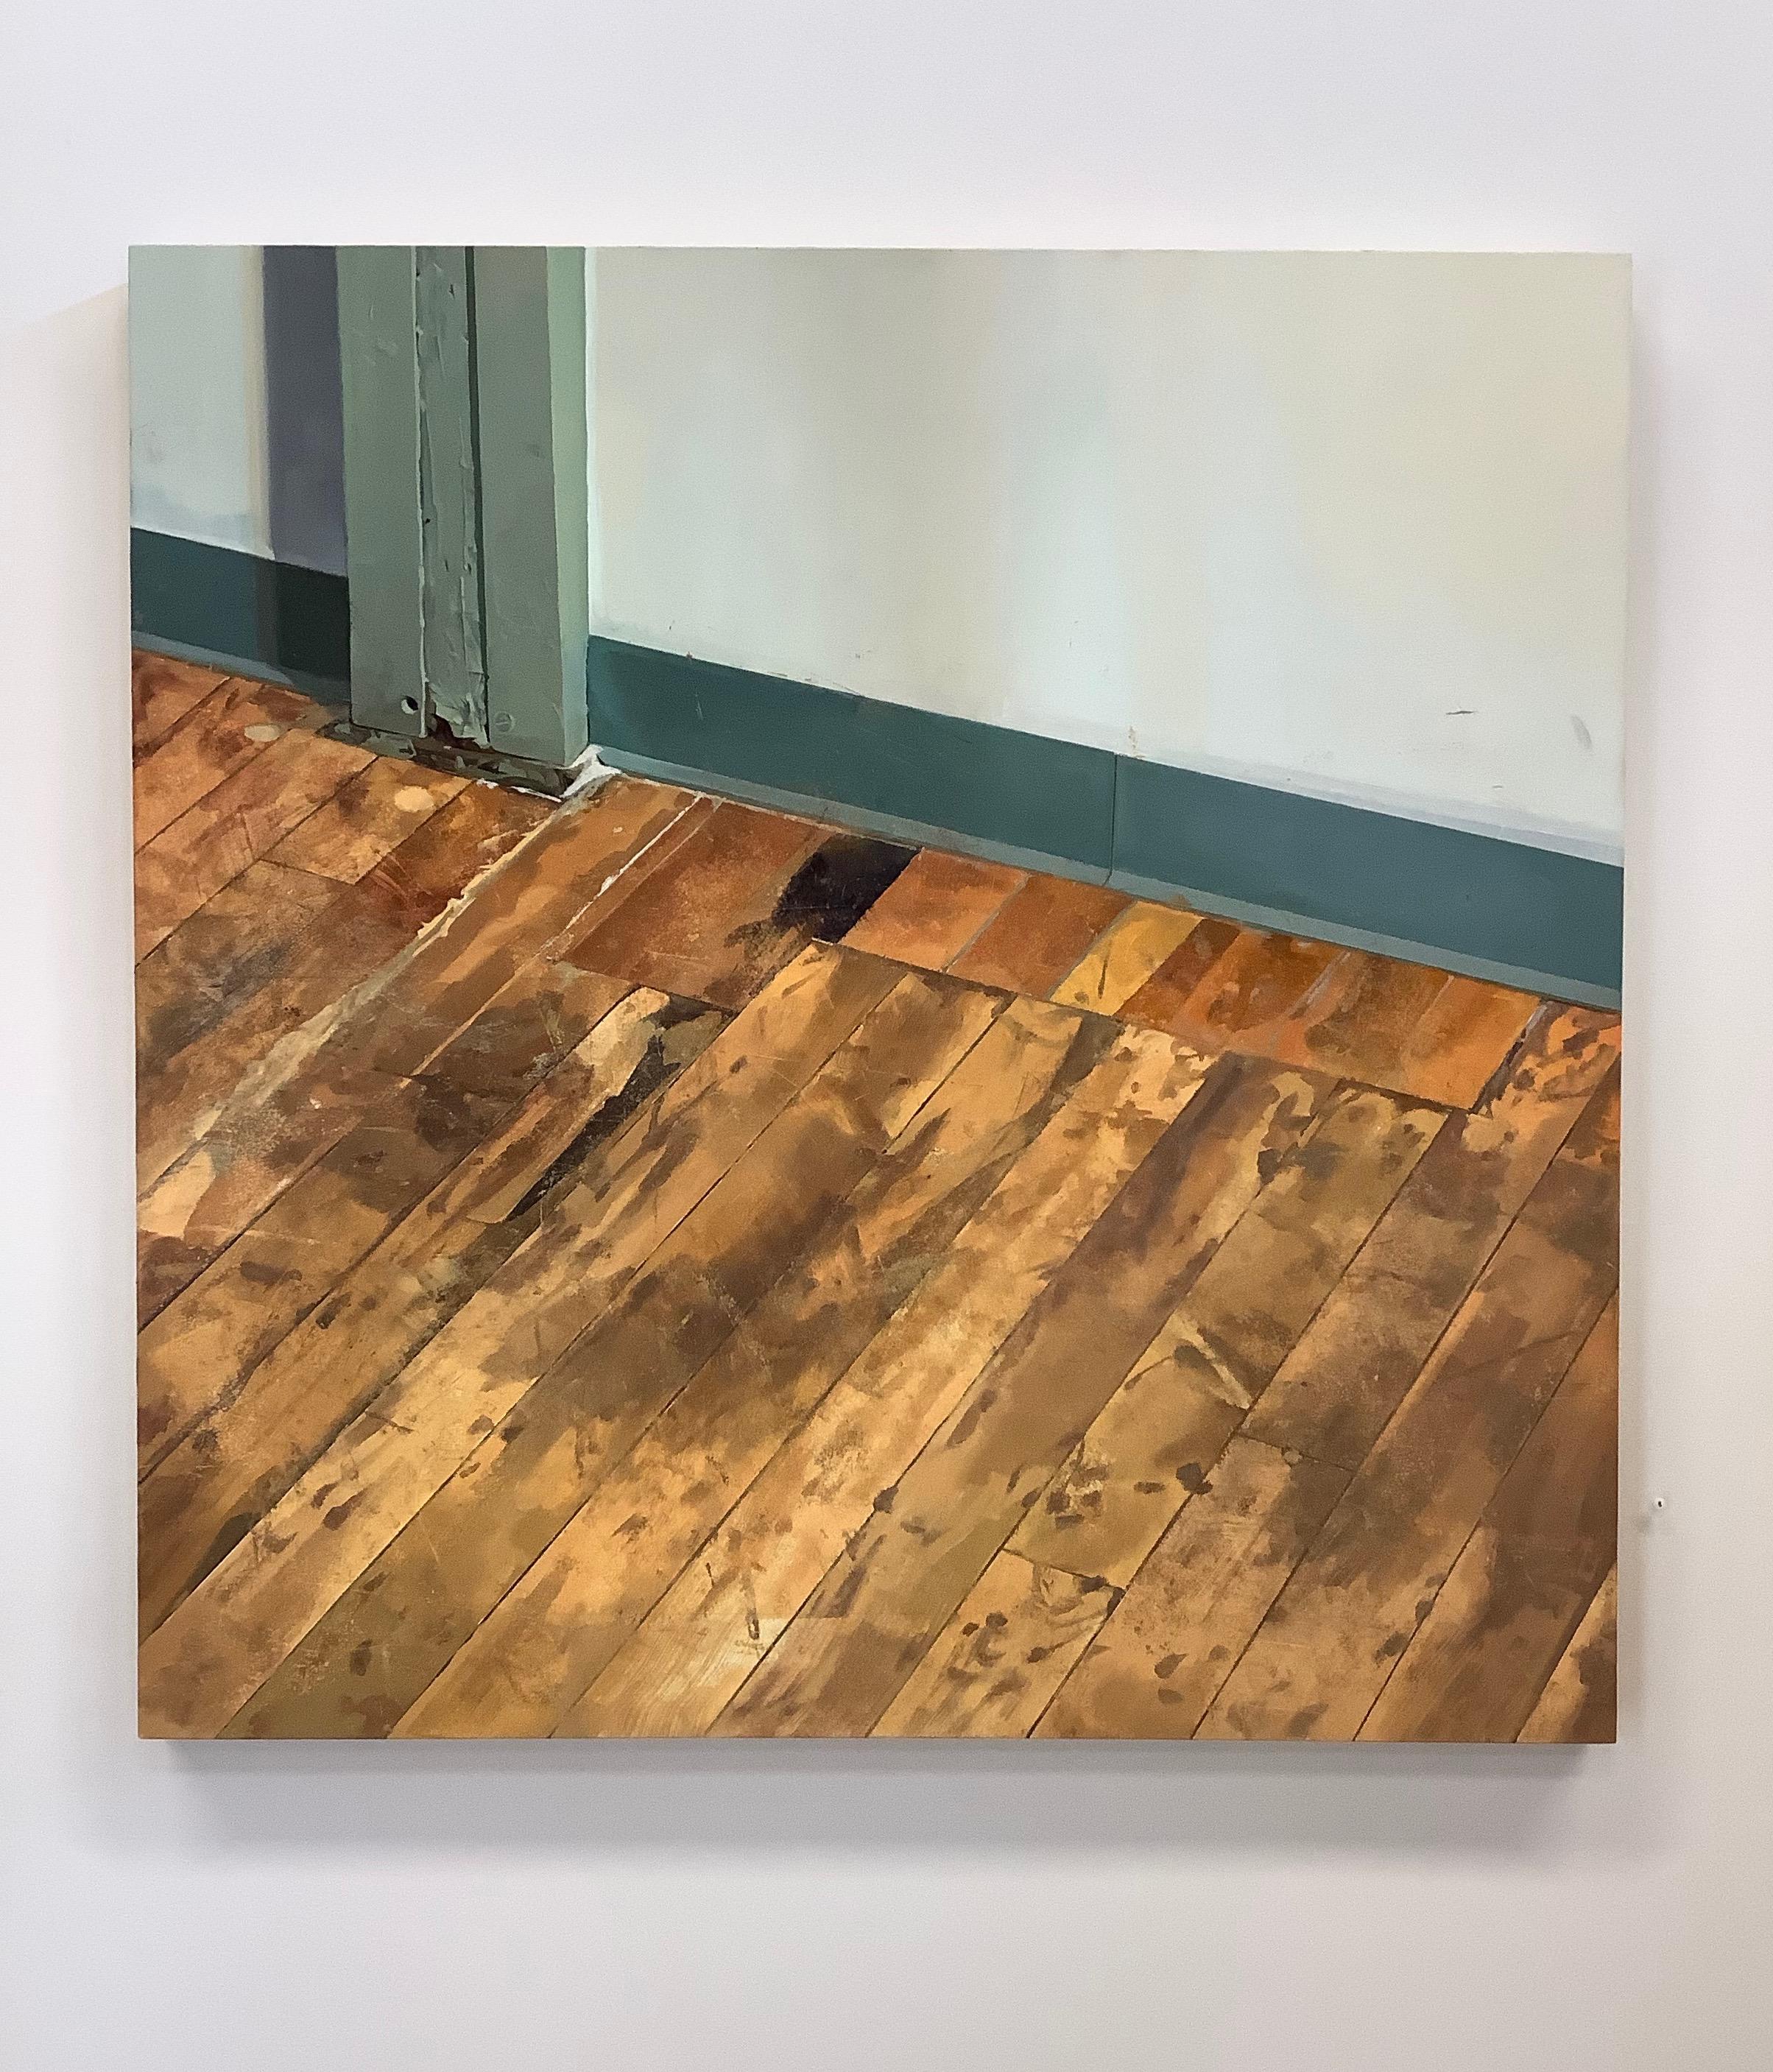 Hallway Floor, Woodgrain Floorboards, Teal Baseboard, White Room Interior Scene - Painting by Brett Eberhardt